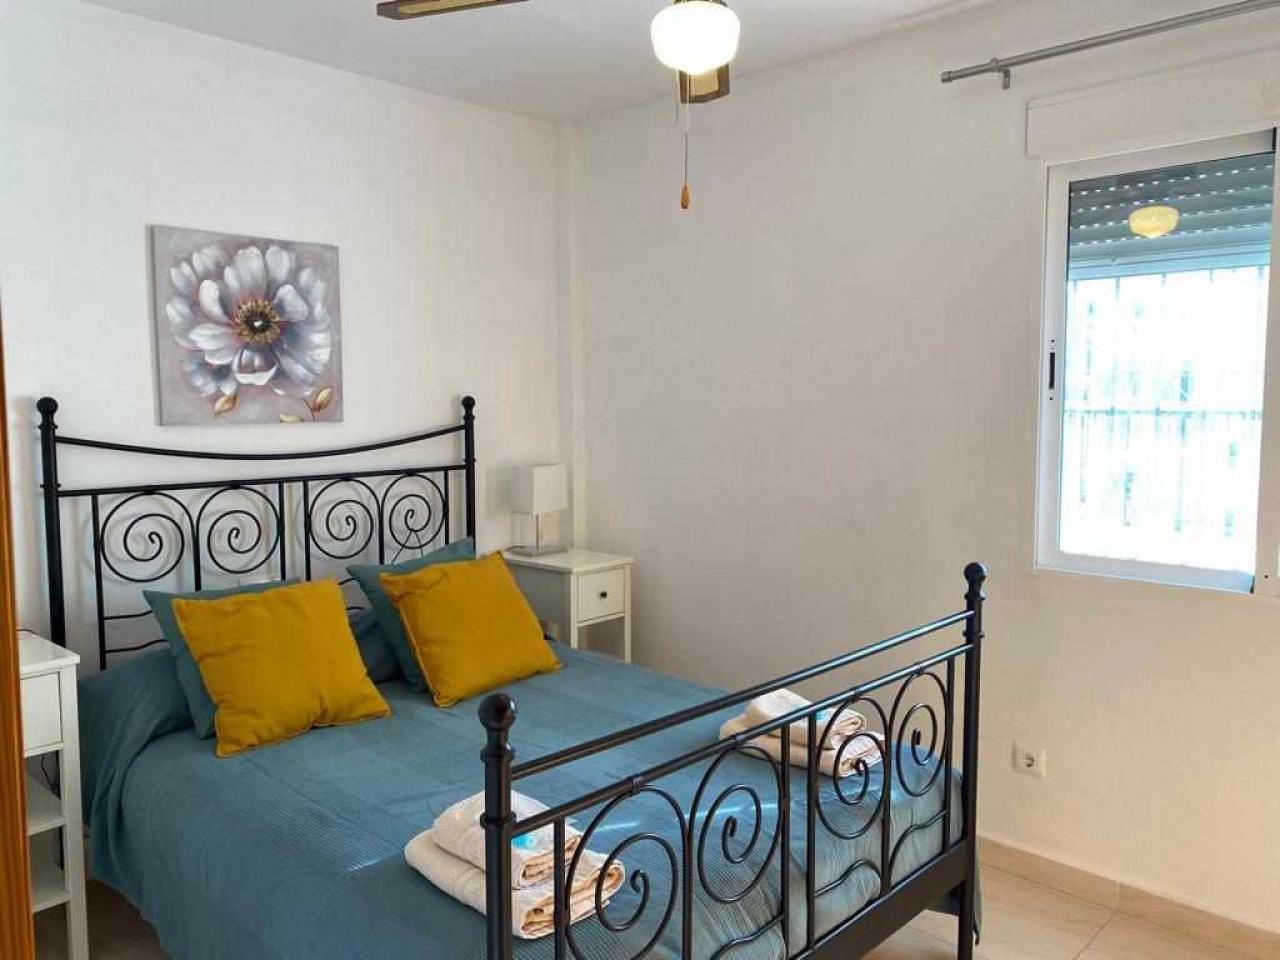 Encantadora villa de 3 cuartos y piscina privada: Villa en alquiler en Turre, Almería